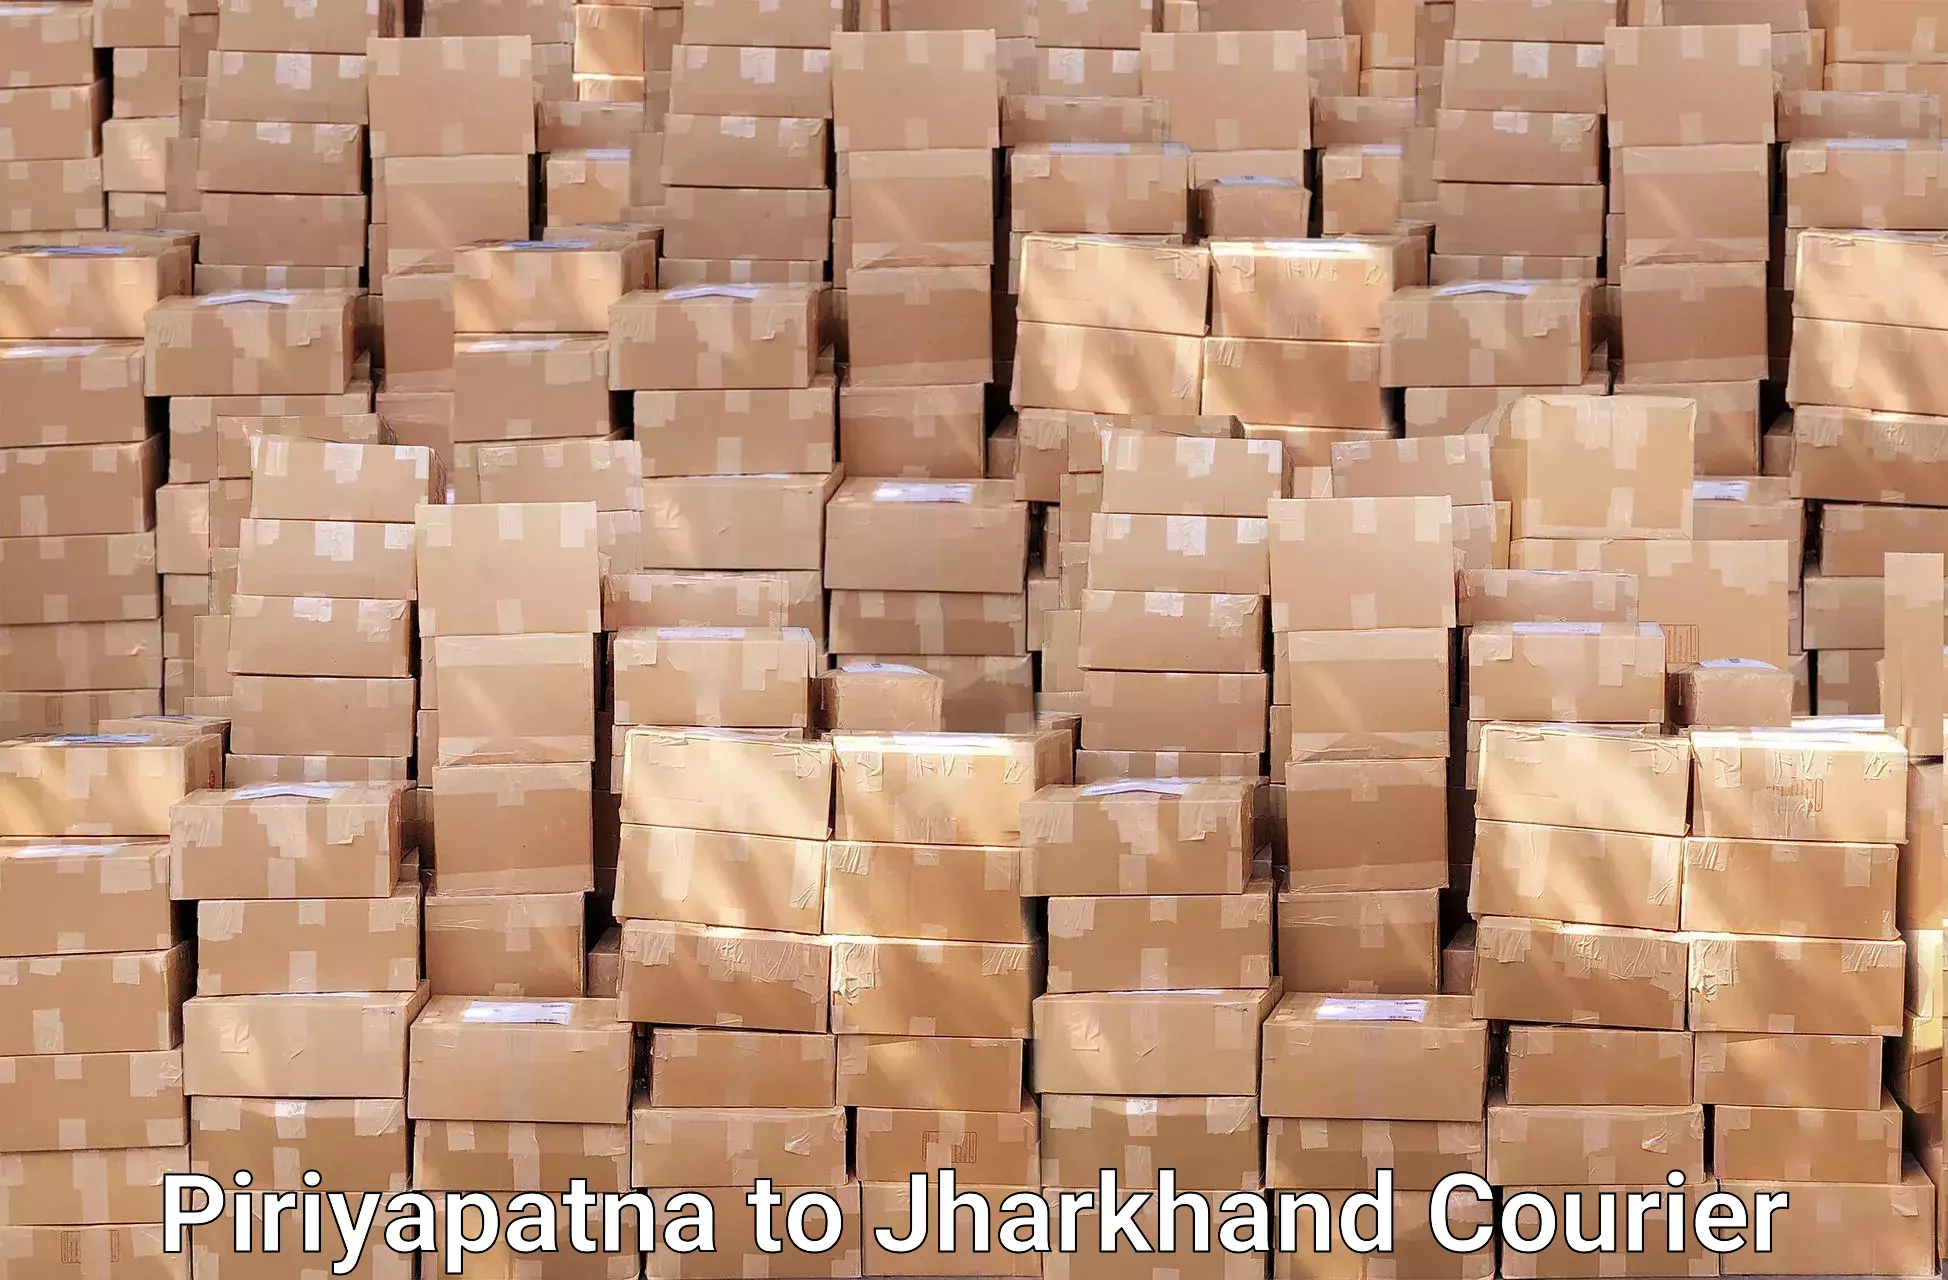 Efficient packing services in Piriyapatna to Lohardaga